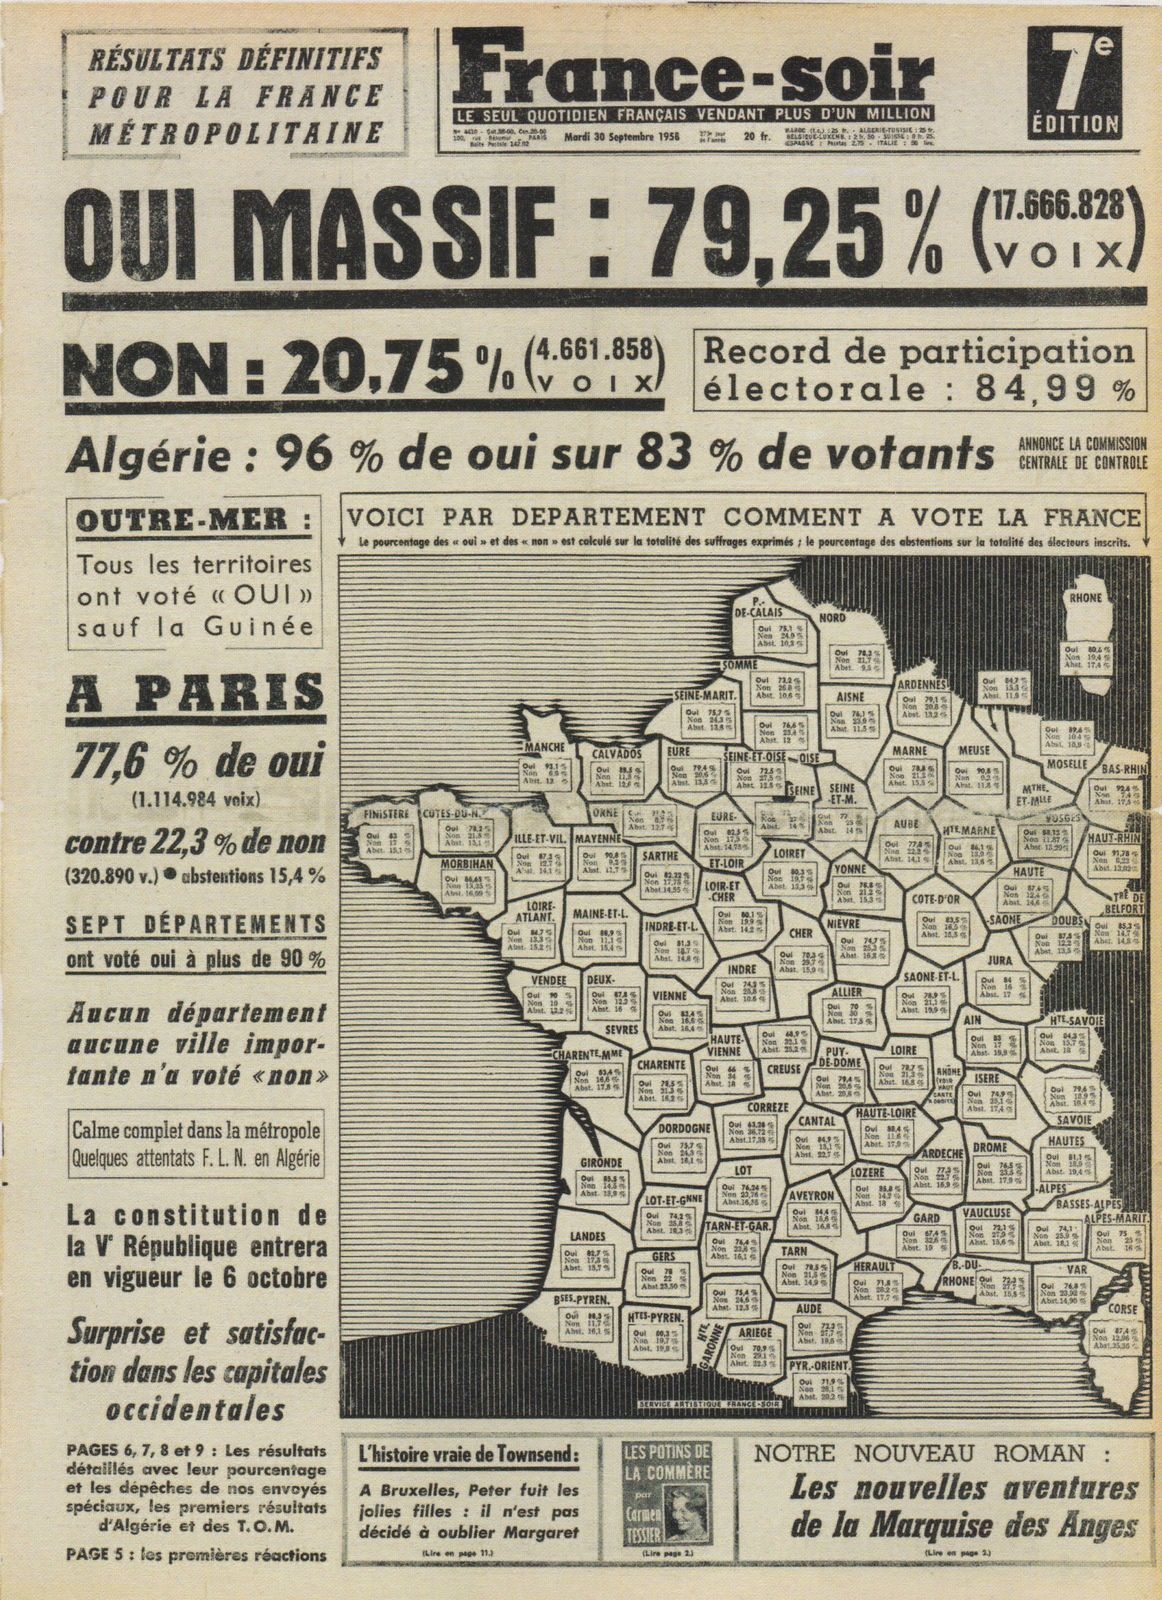 Le coup d'Etat du 13 mai 1958 en France